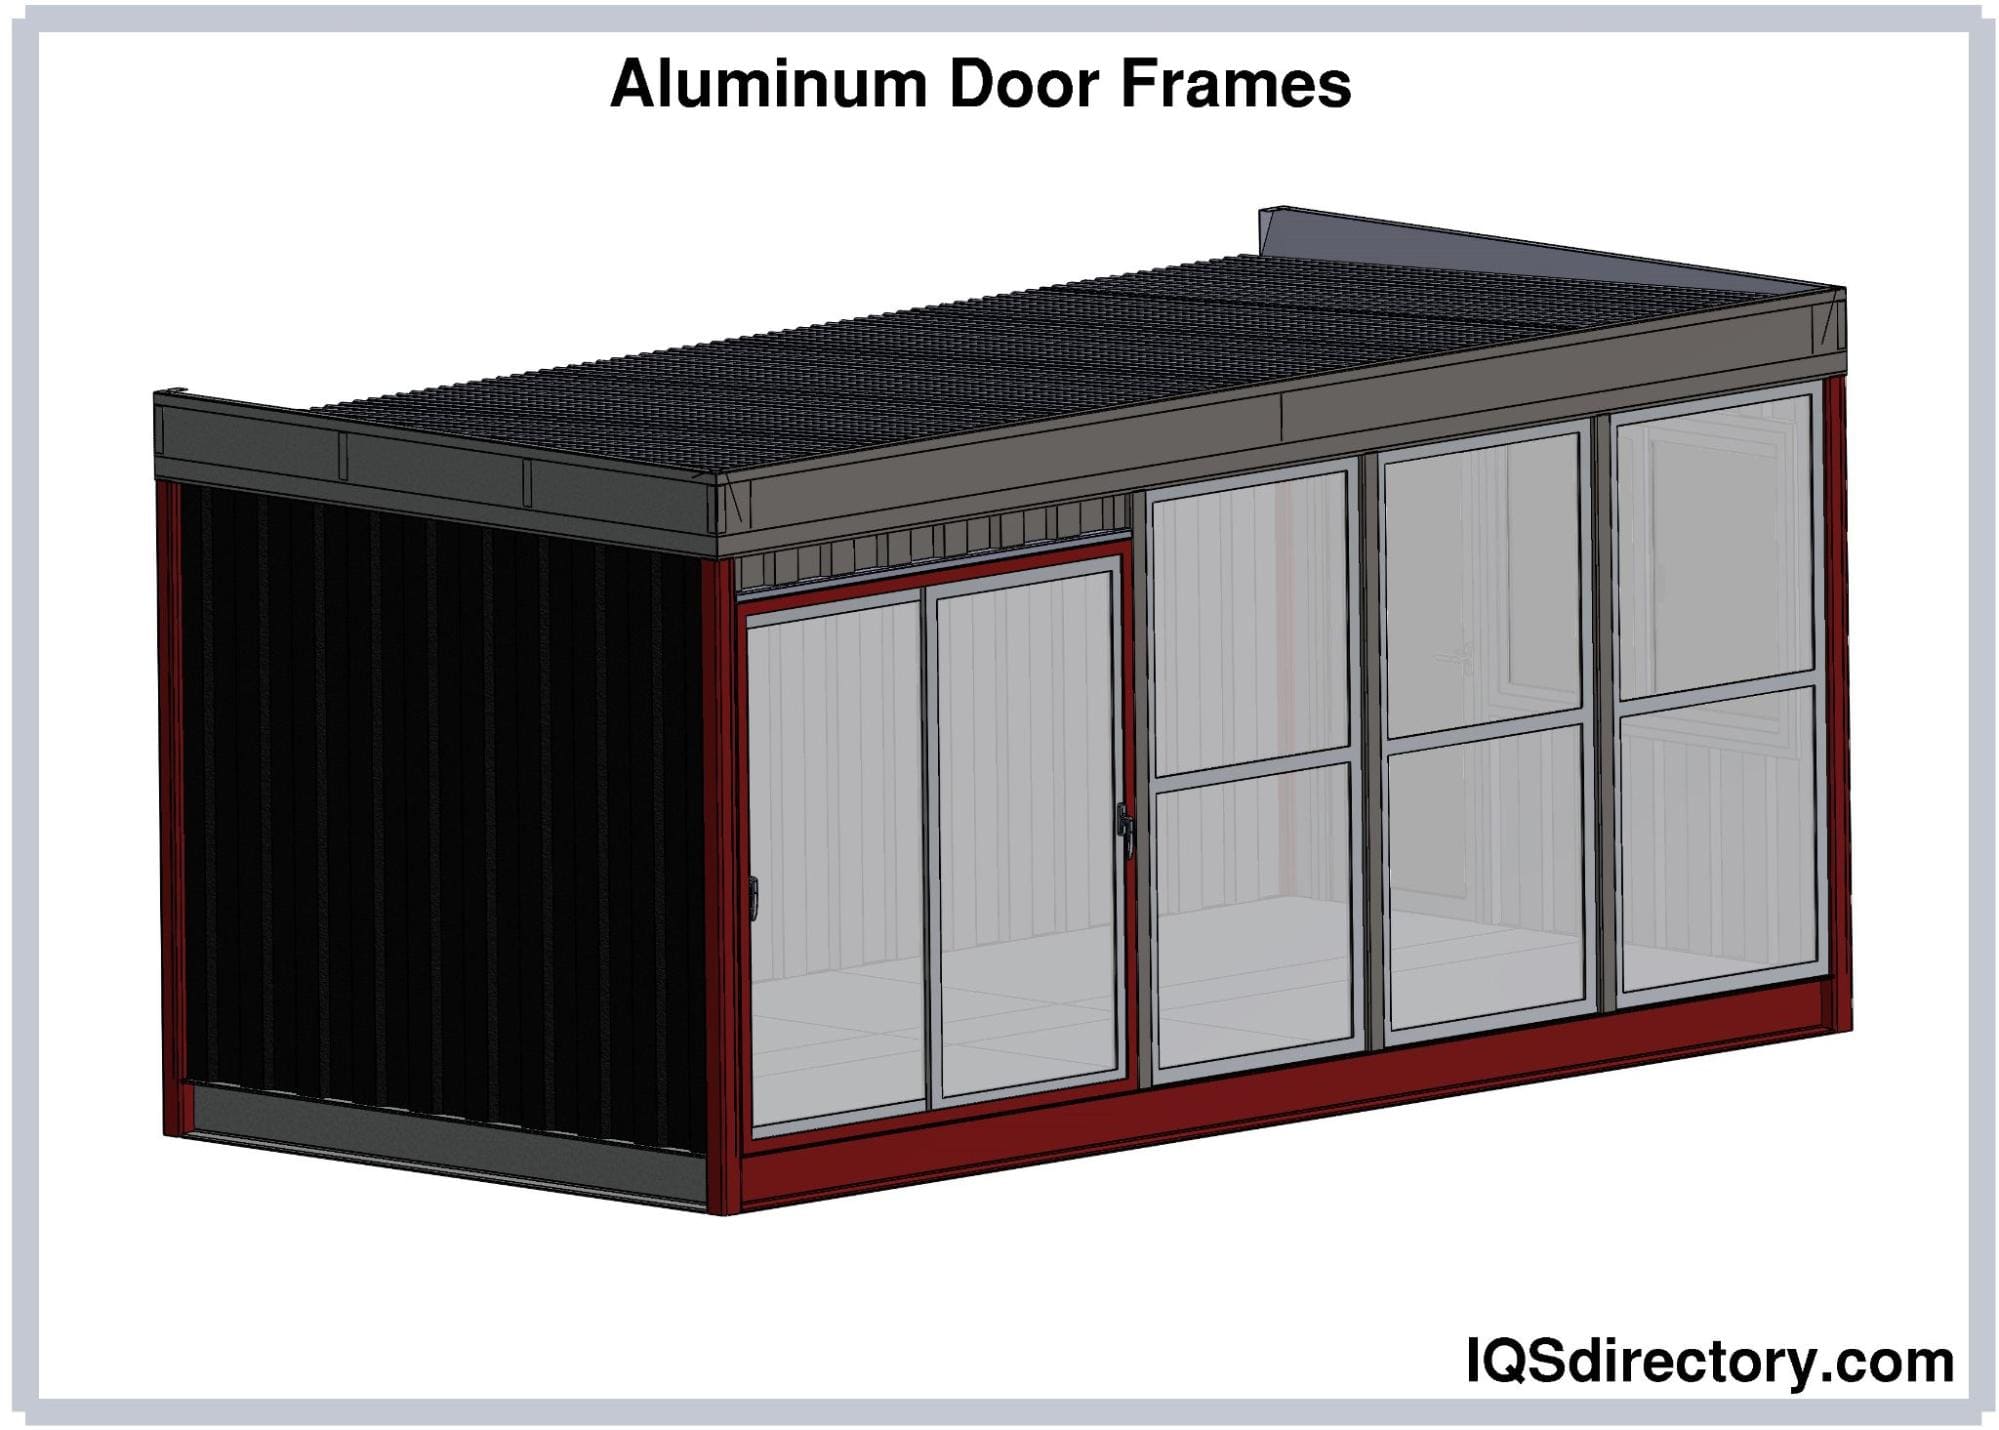 Aluminum Door Frames